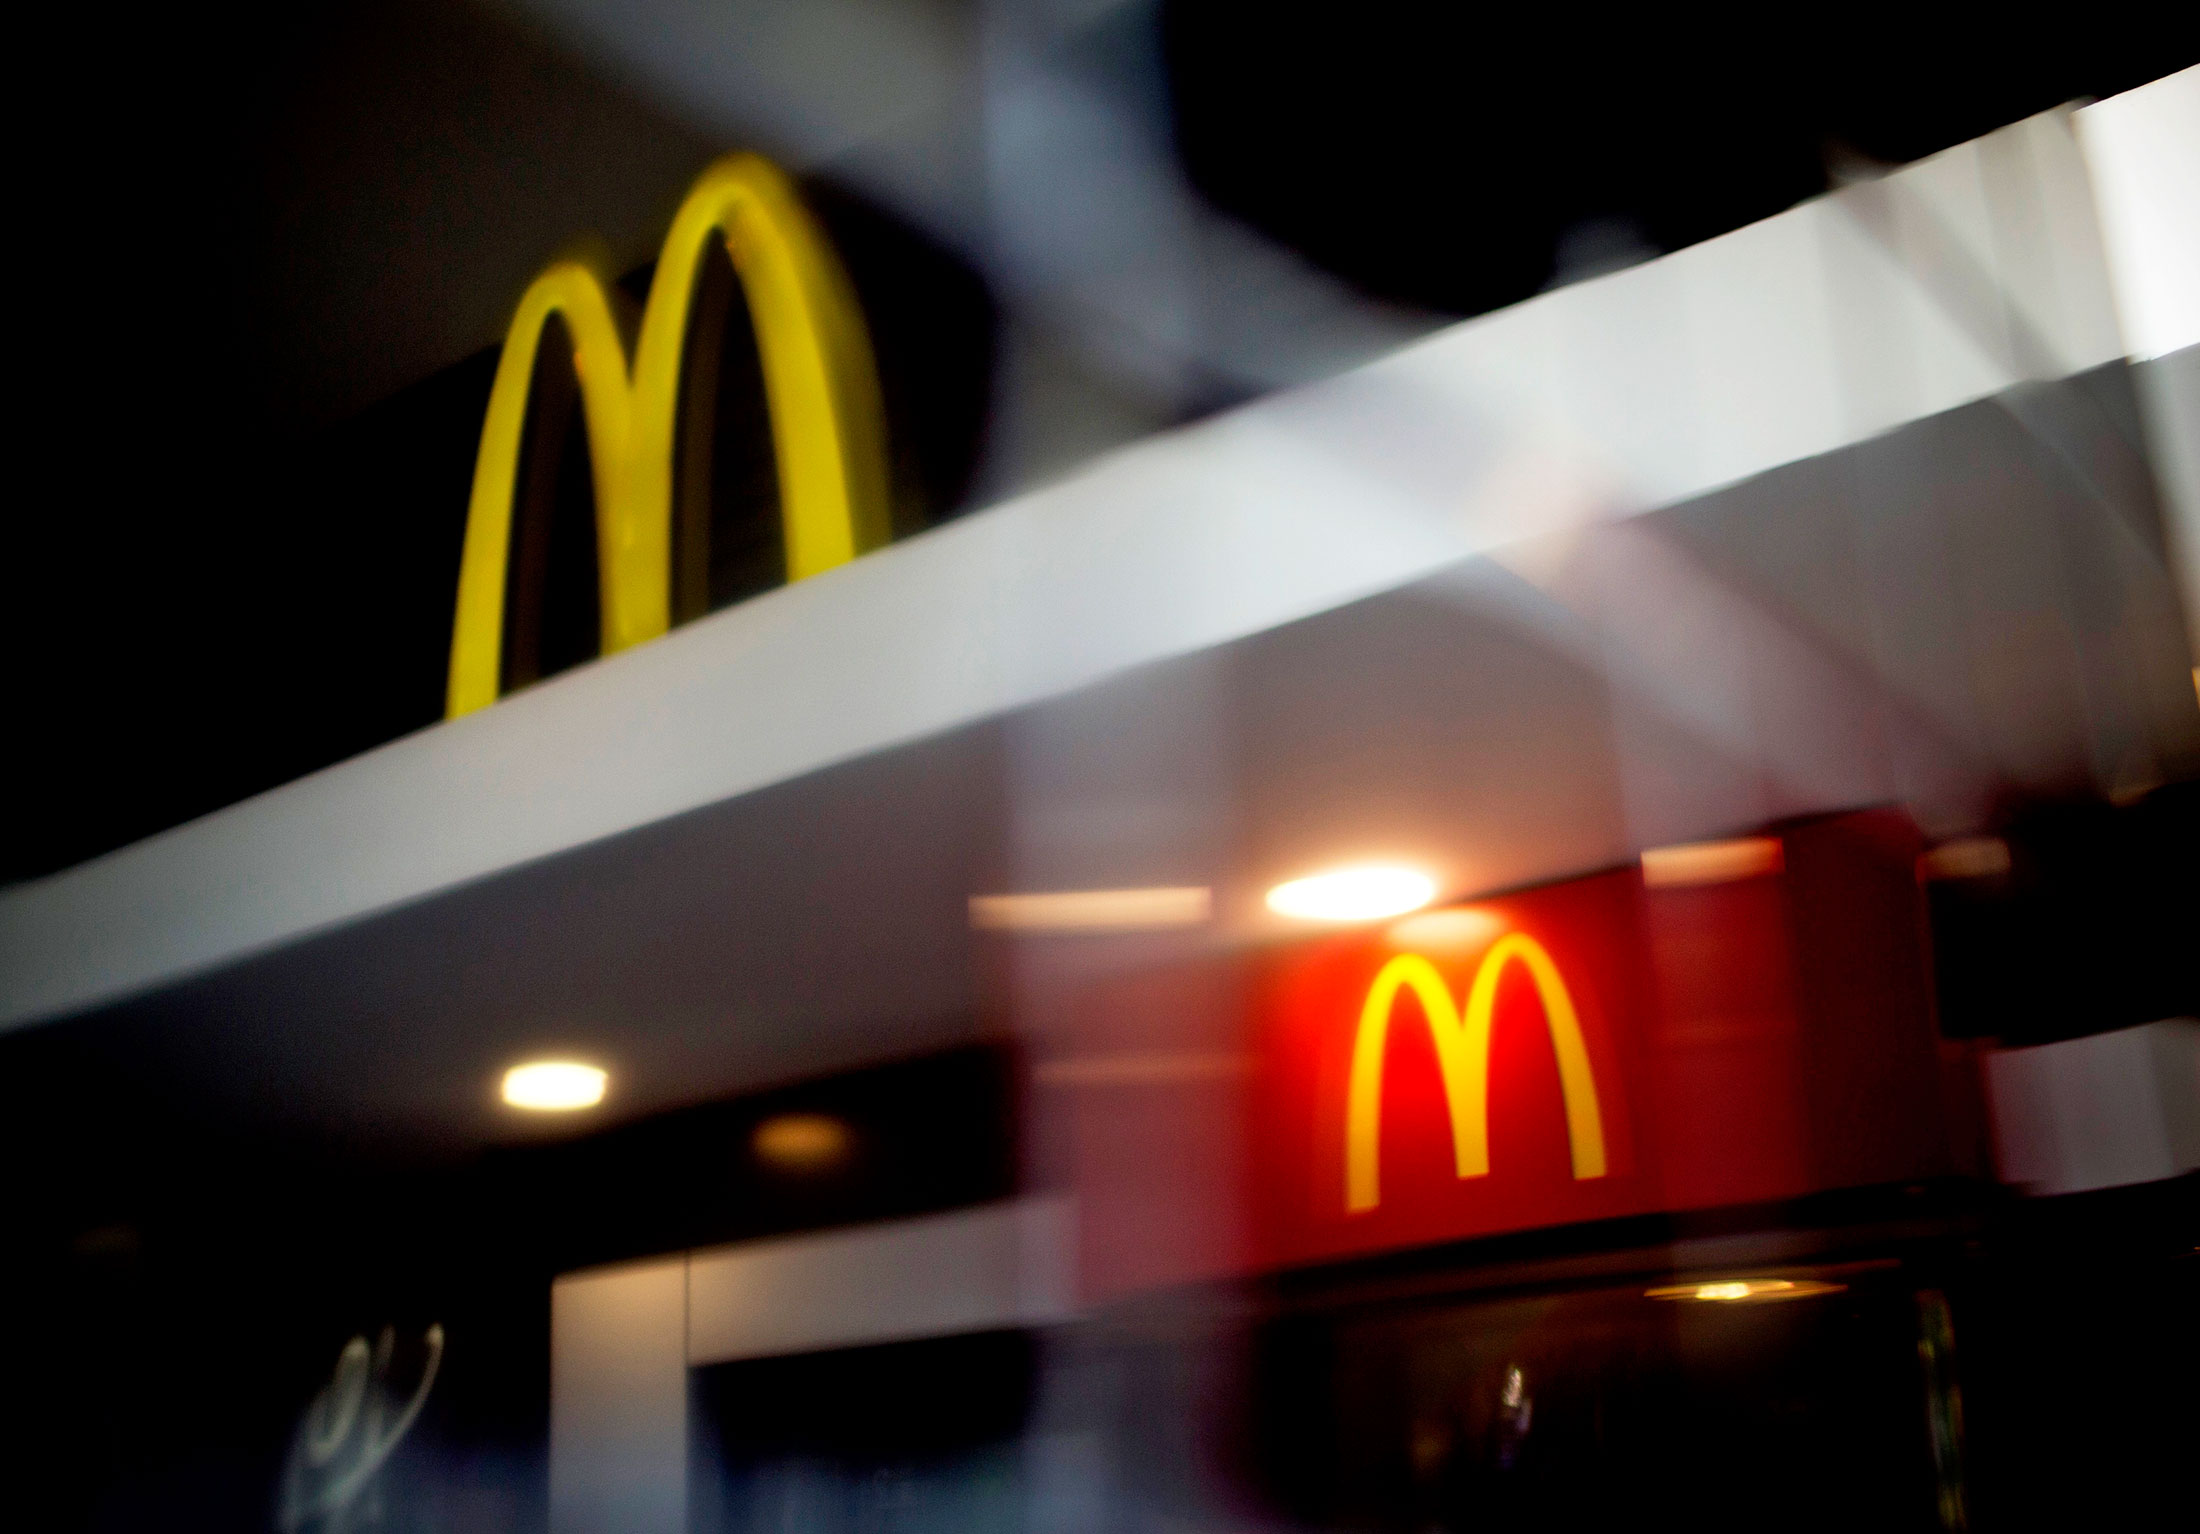 Hamburglar retornará em marketing do McDonald's - Nerdizmo